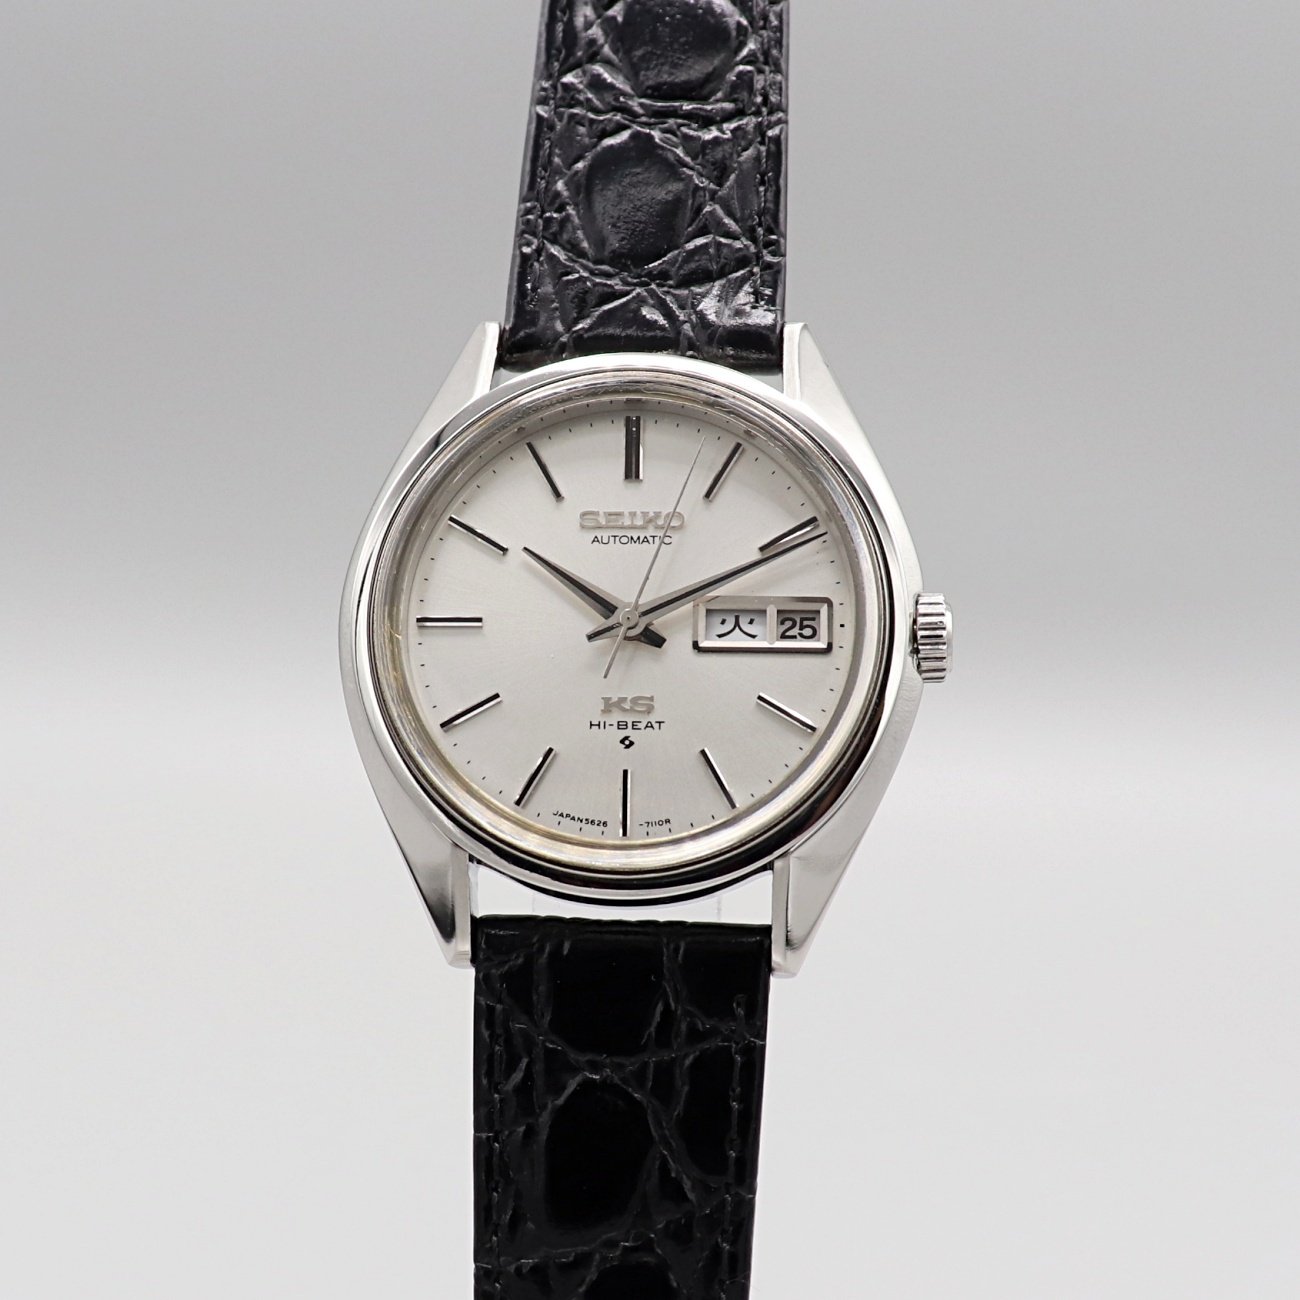 1973年製 SEIKO キング セイコー 5626-7111 56KS デイデイト 自動巻紳士腕時計 諏訪工場製【OH済】 - ブランド腕時計